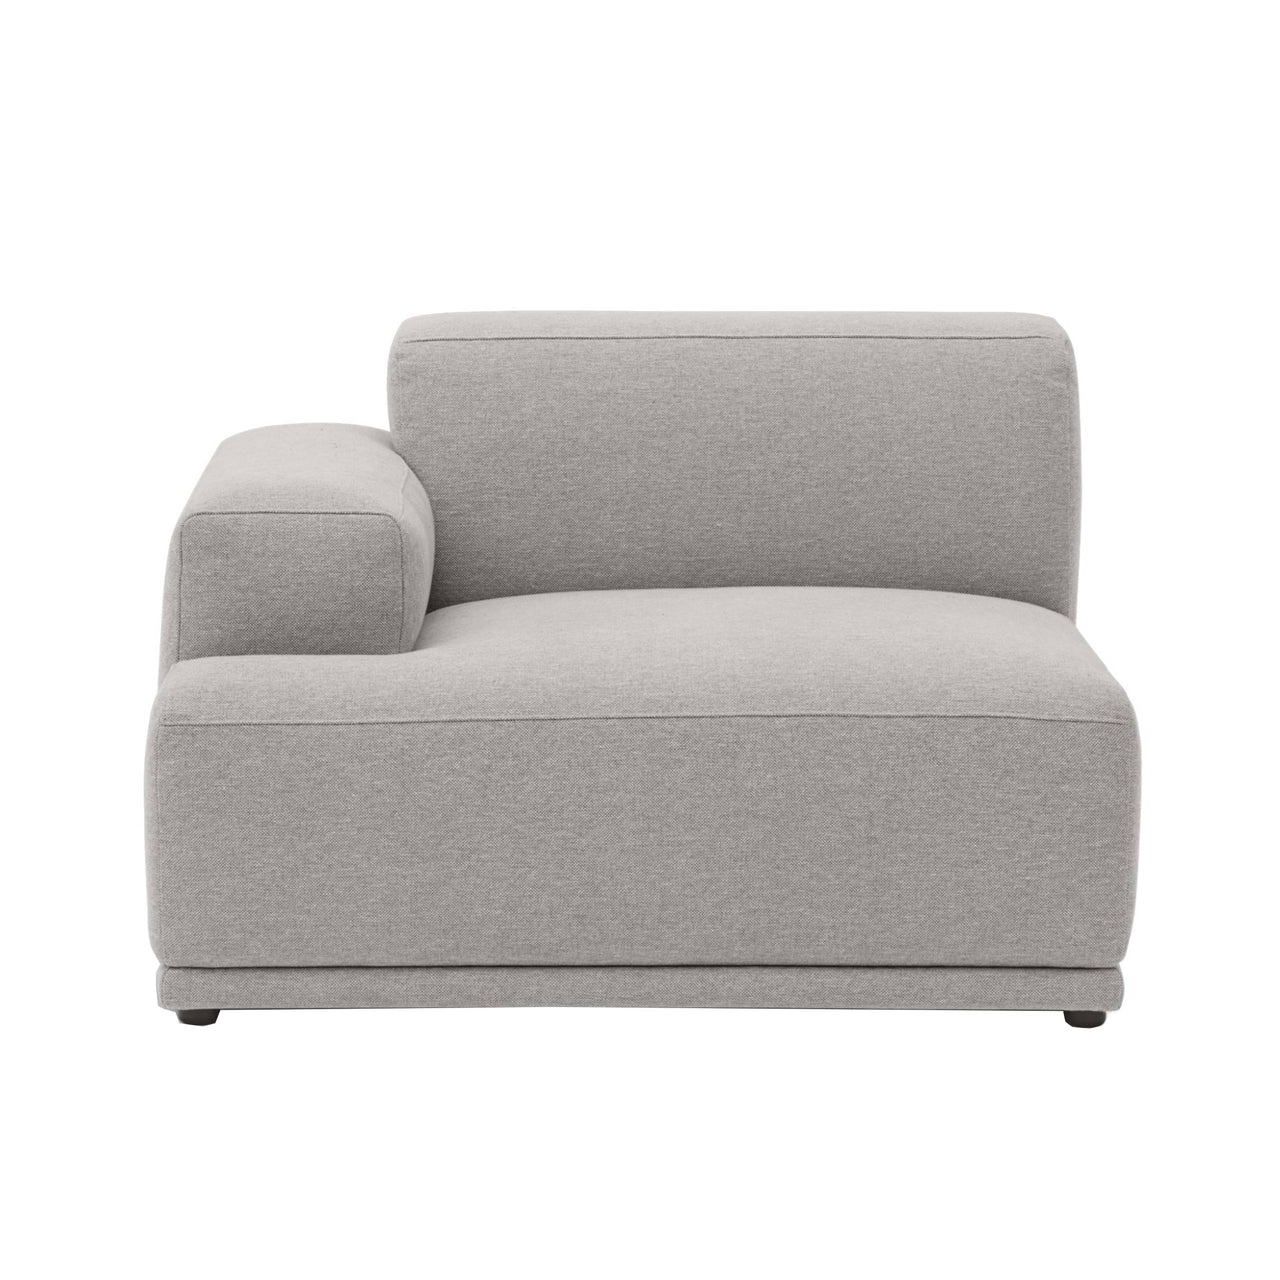 Connect Soft Sofa Modules: Left Armrest A